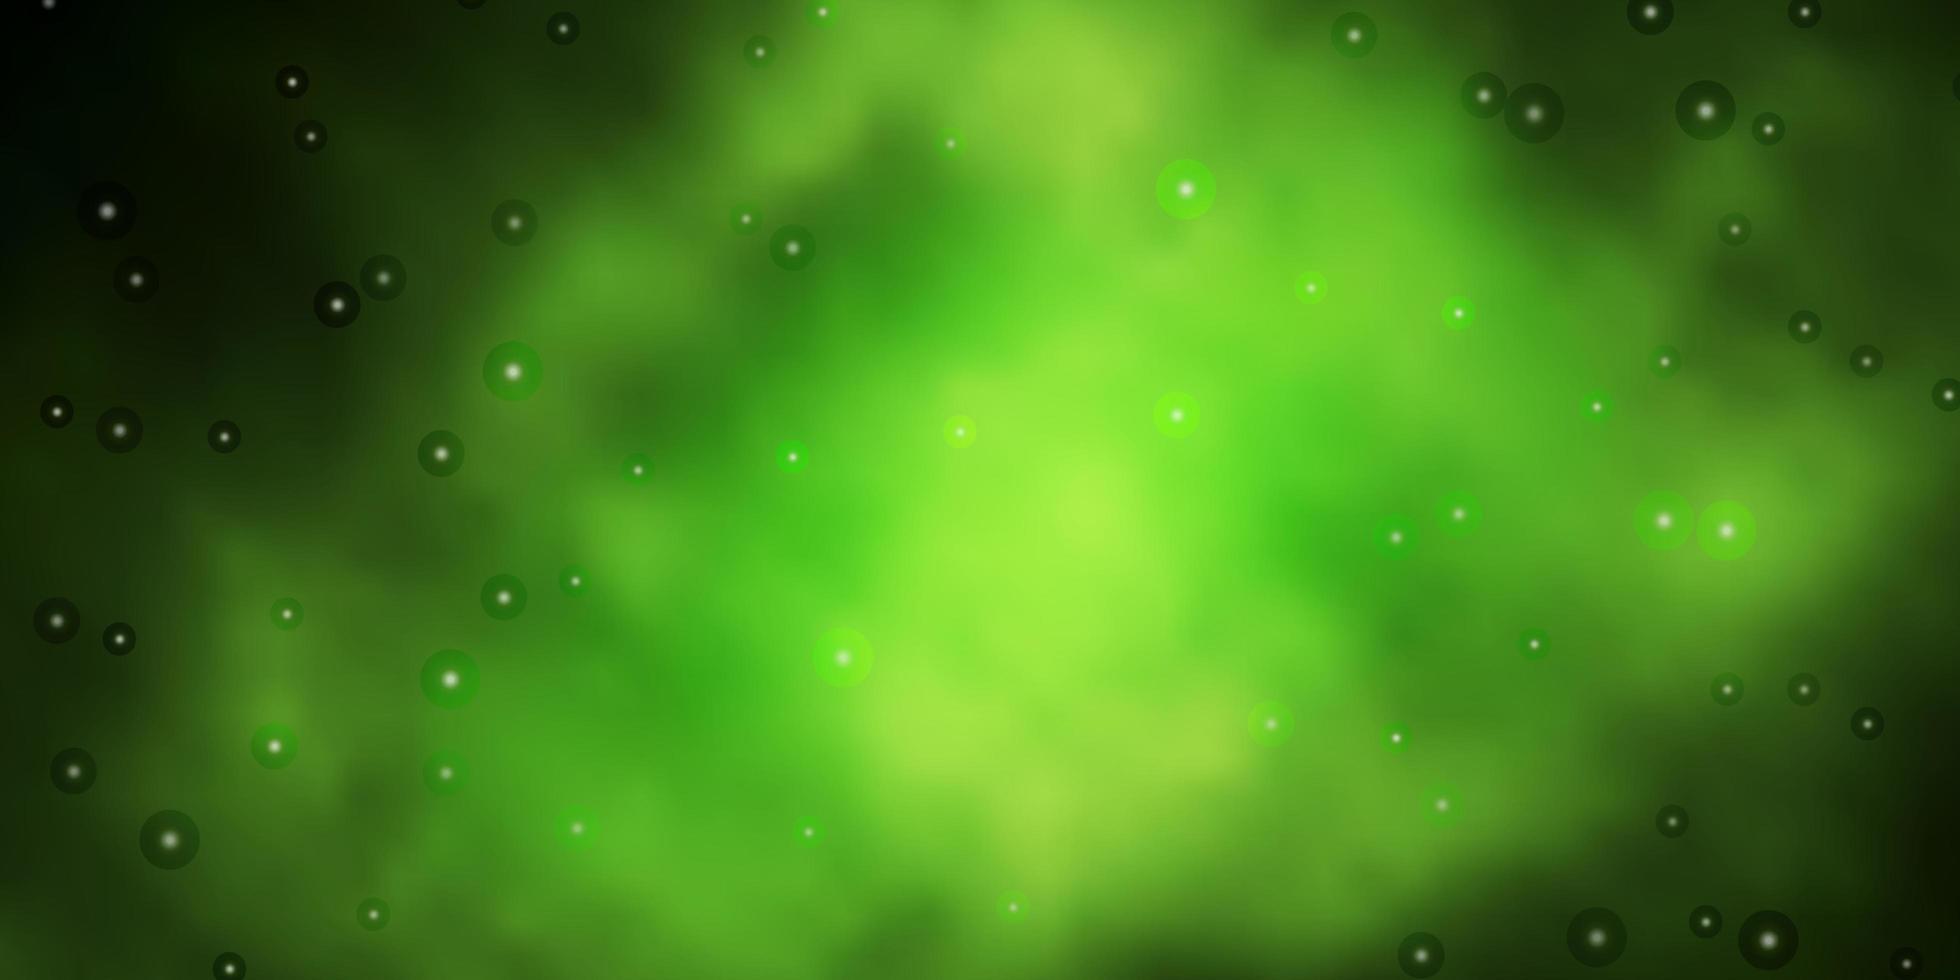 mörkgrön, gul vektorbakgrund med små och stora stjärnor. vektor